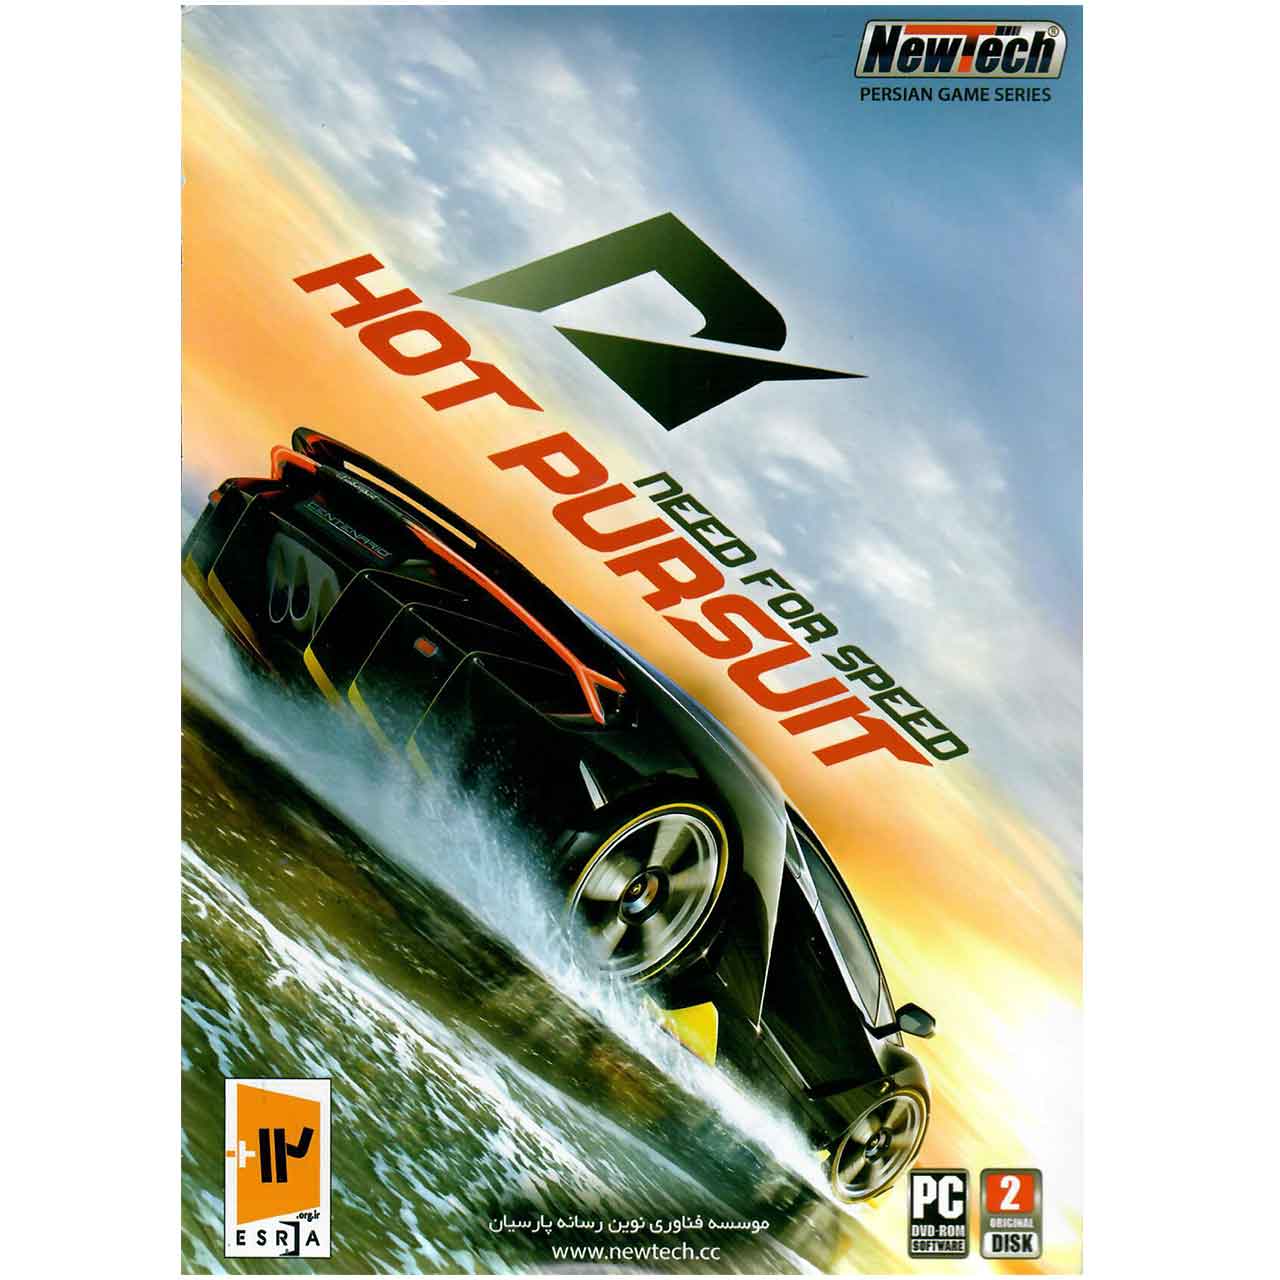 بازی Need For Speed Hot Pursuit مخصوص  PC